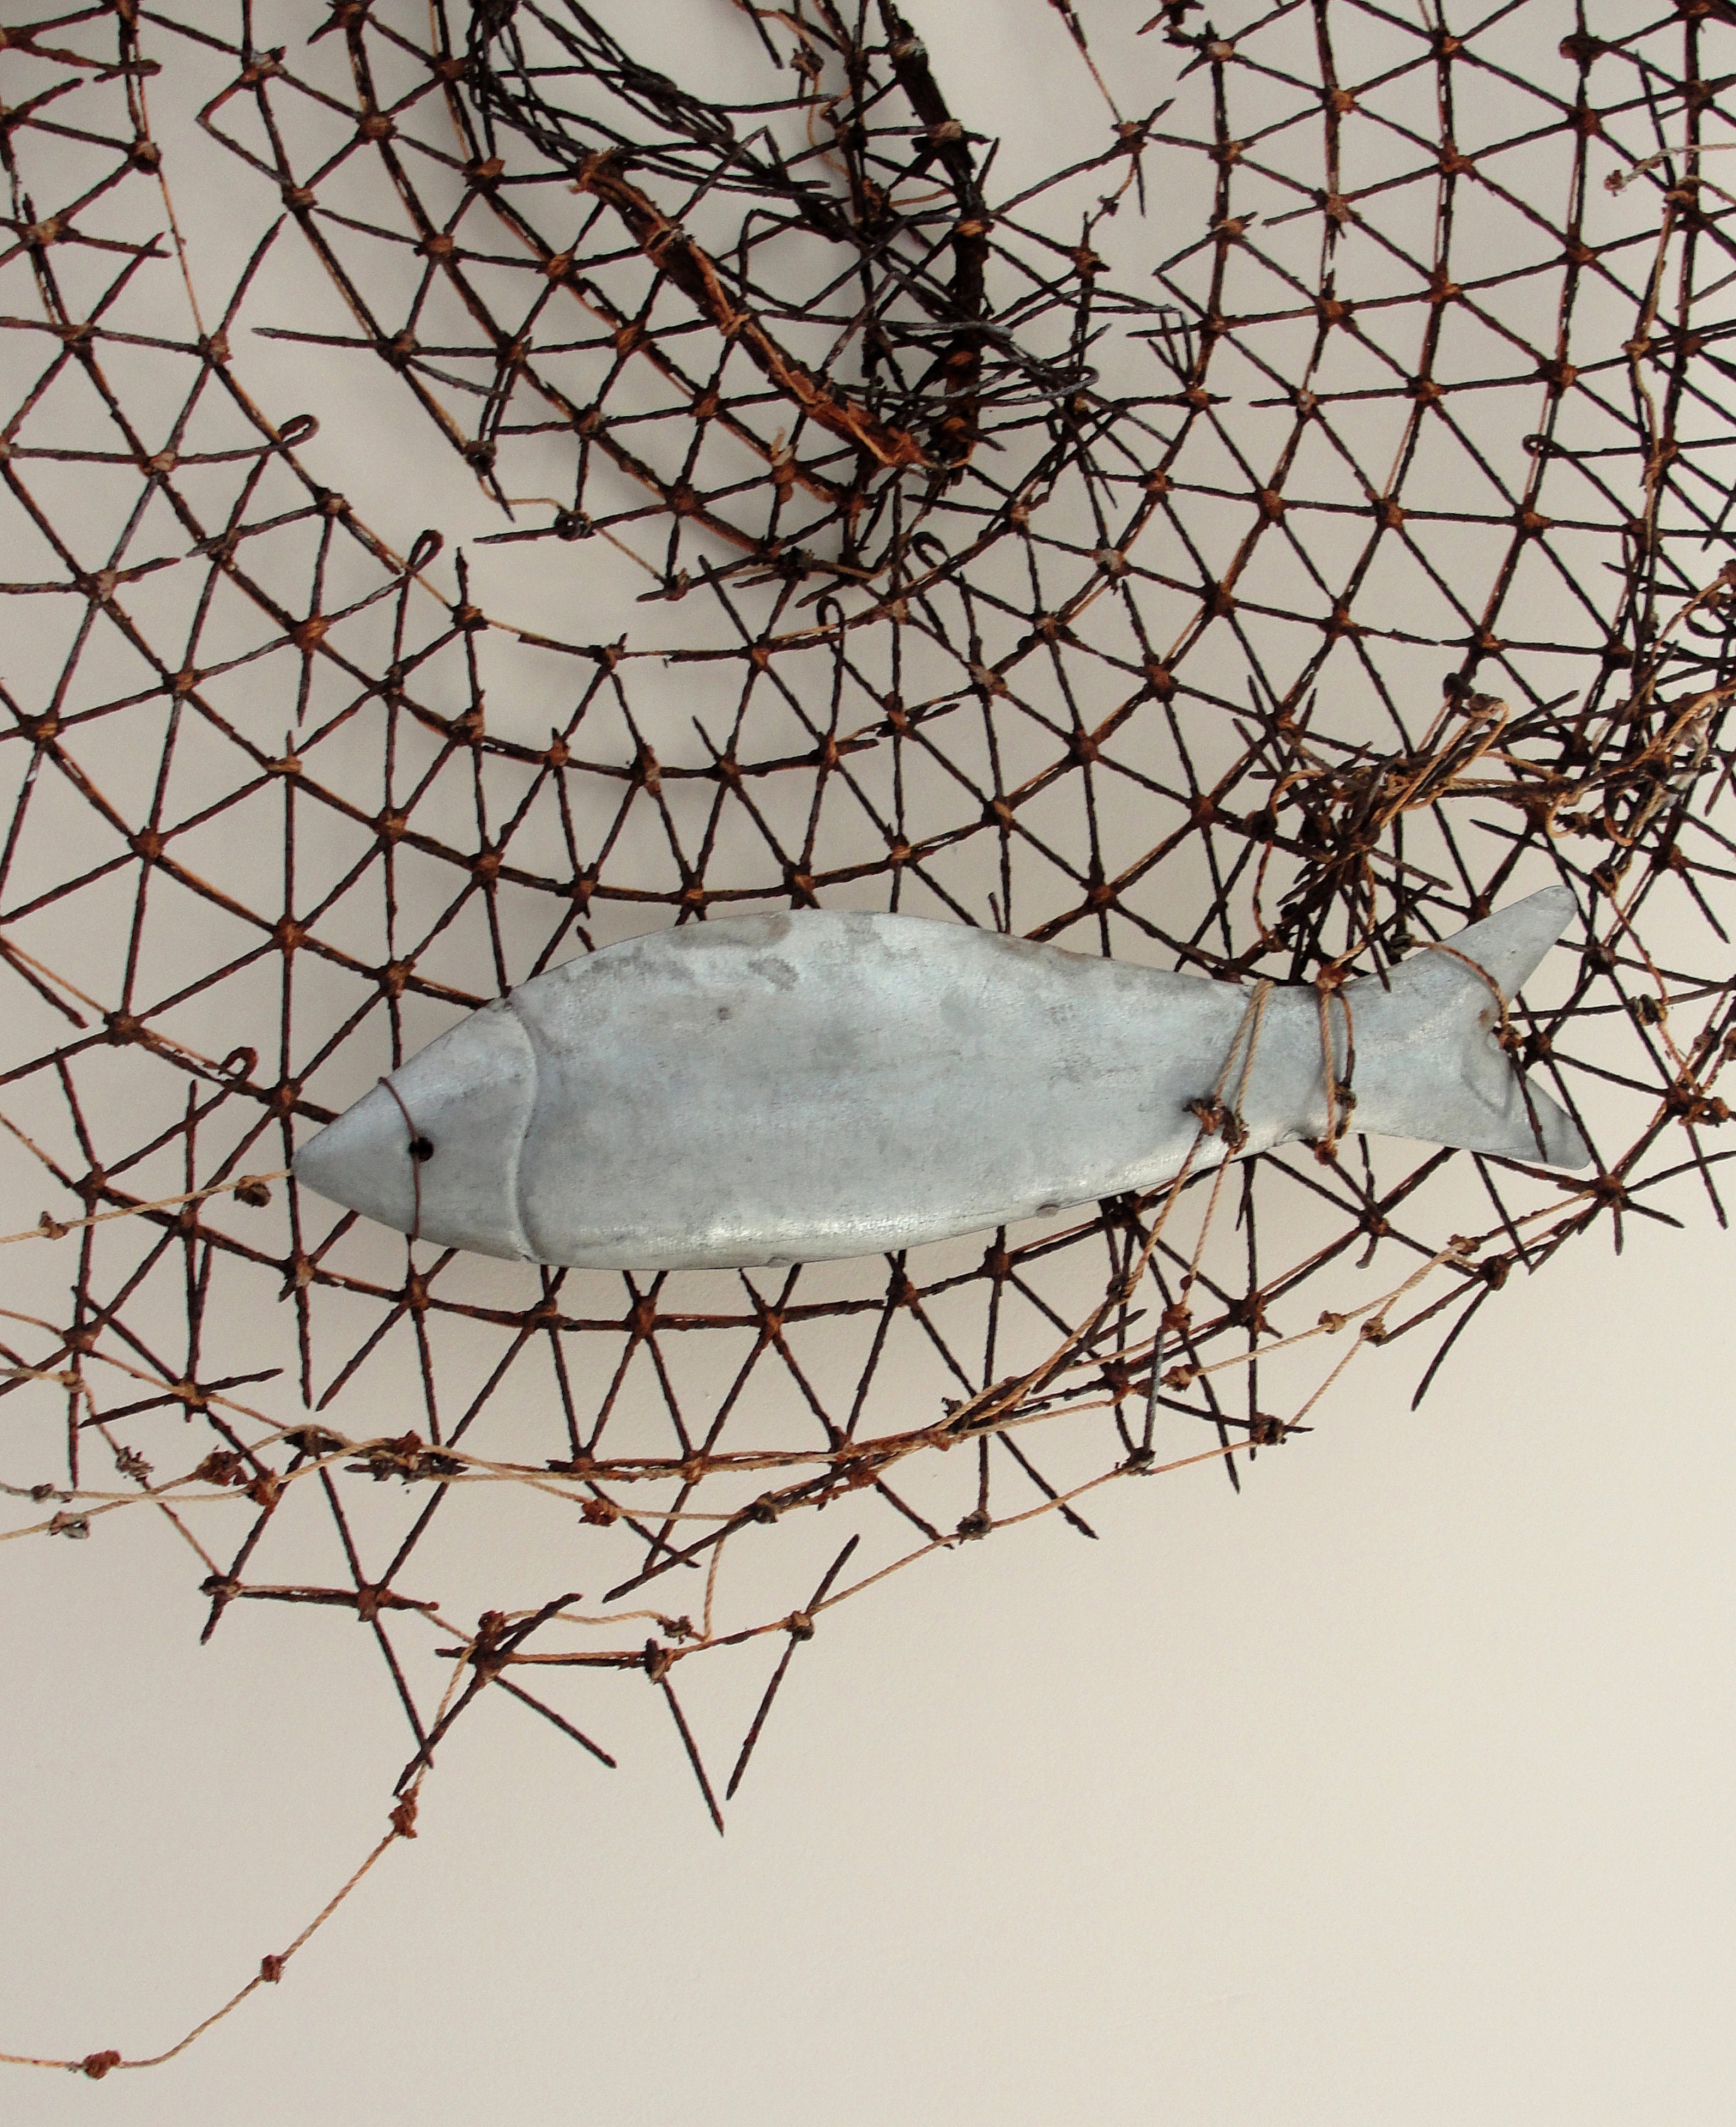 Ghost Net Art Installation, Fishing Net, Abstract Art, Beach Finds